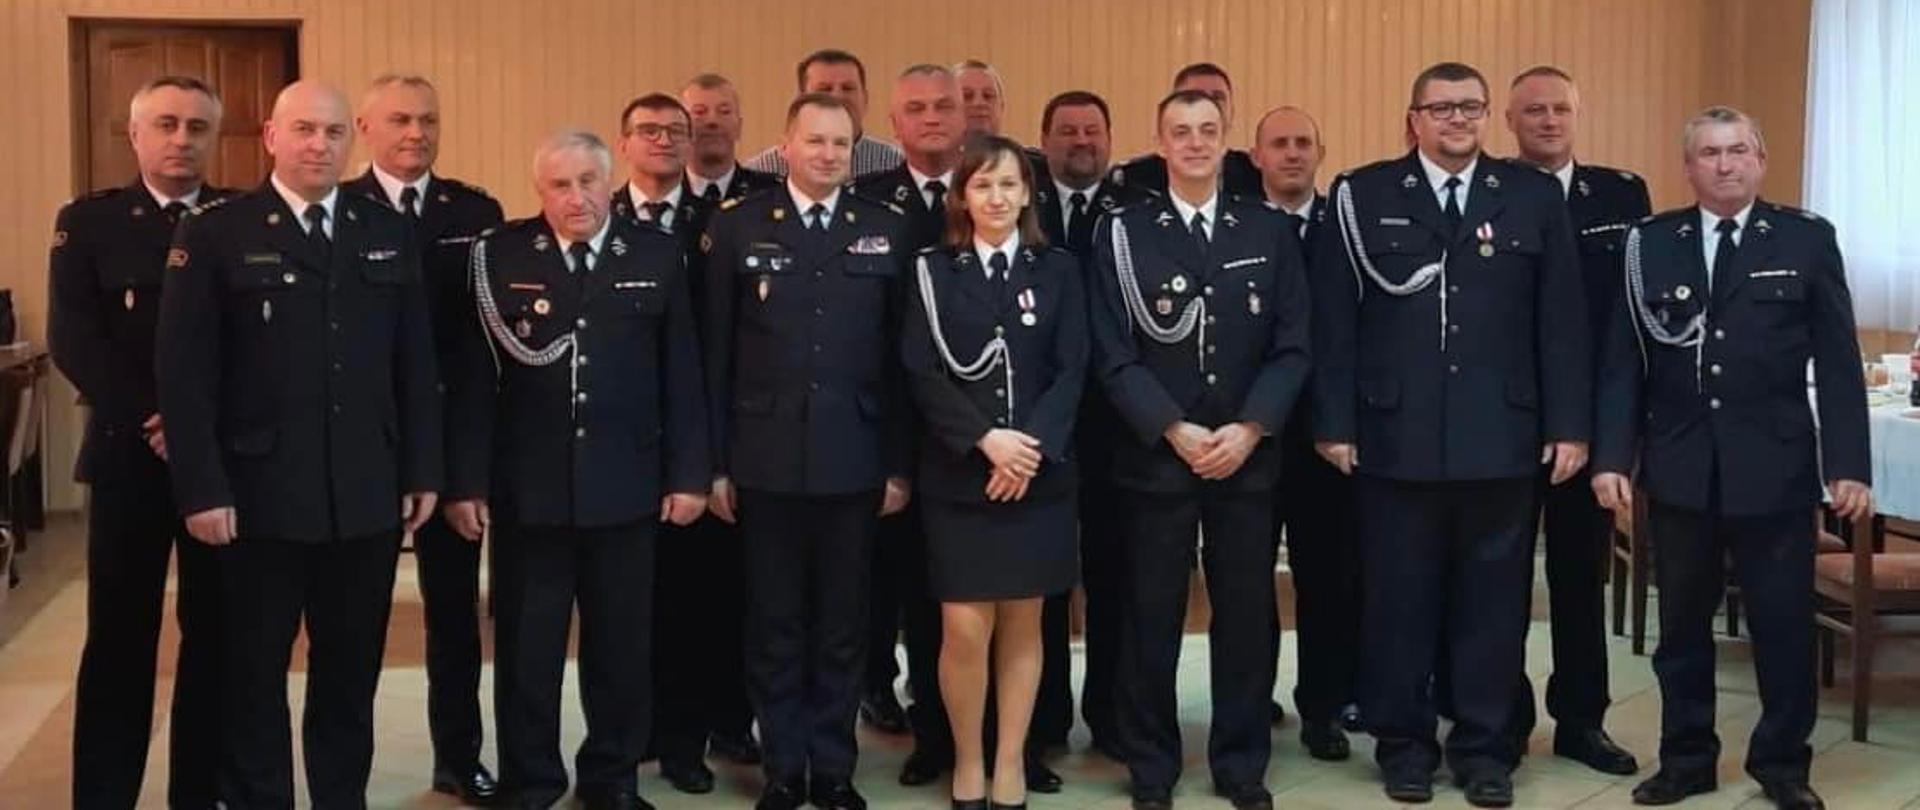 Zastępca Komendanta Głównego PSP uczestniczył w Walnym Zebraniu OSP Wola Prażmowska (powiat piaseczyński)